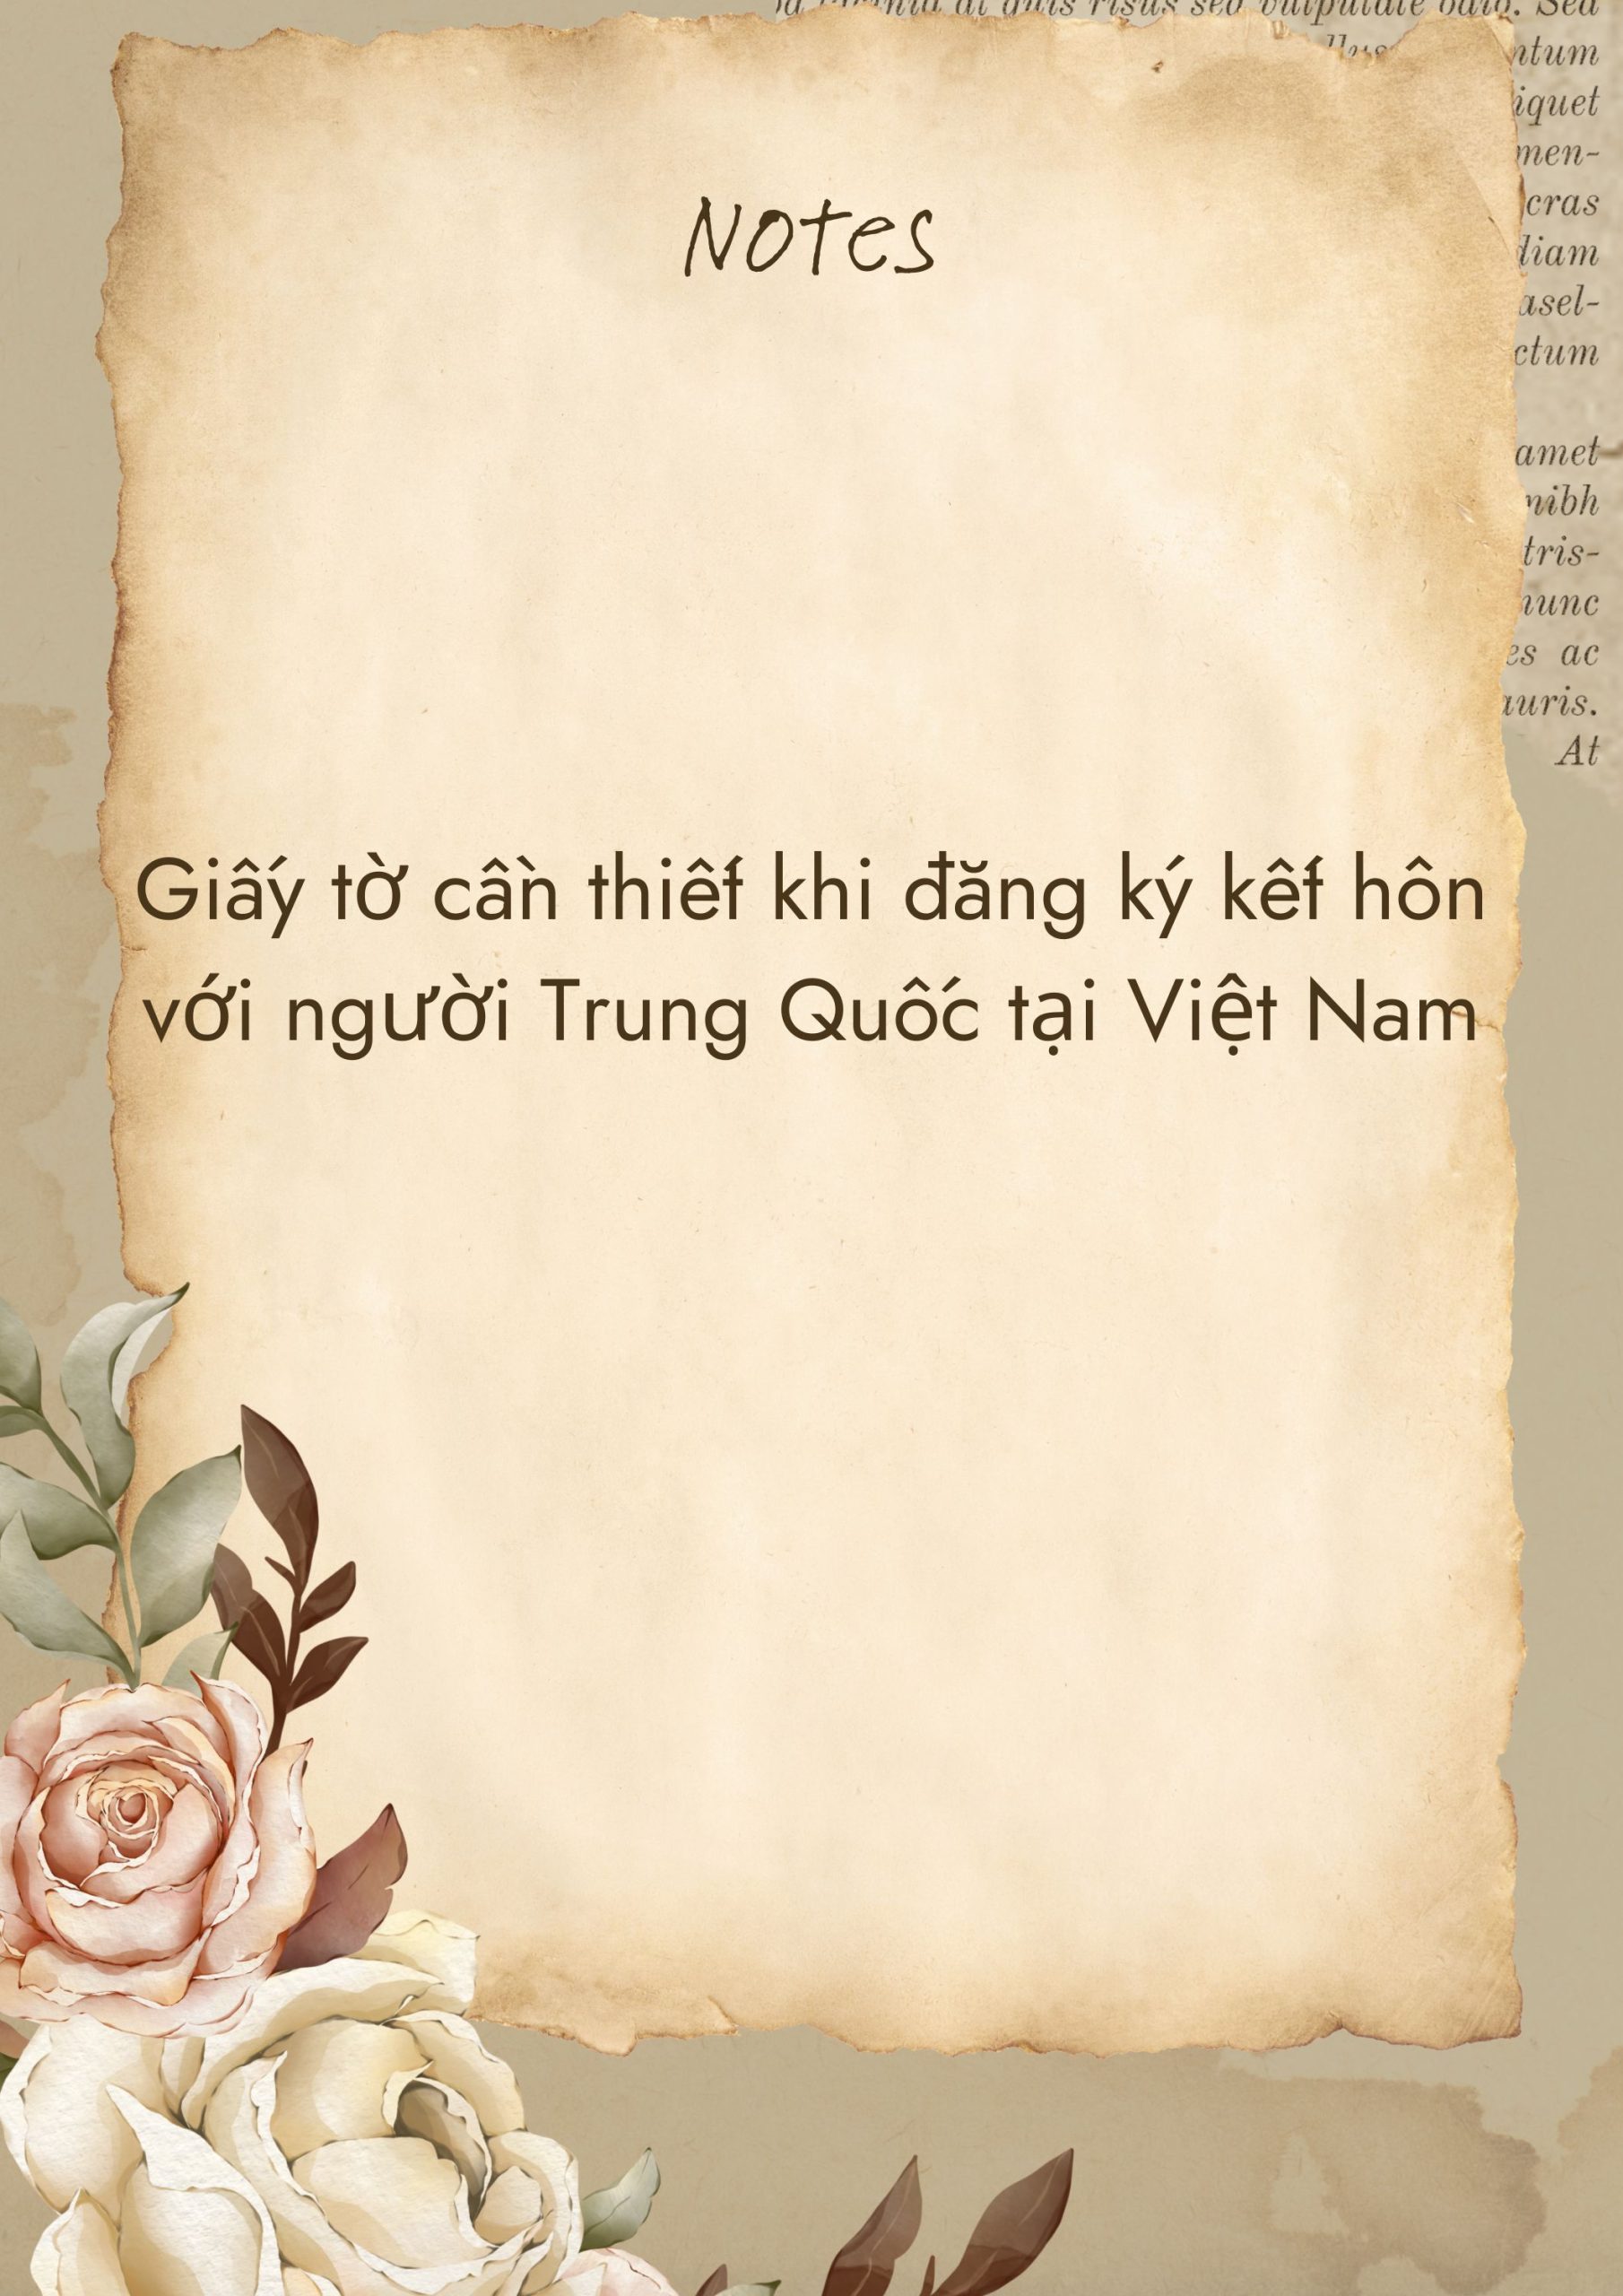 Giấy tờ cần thiết khi đăng ký kết hôn với người Trung Quốc tại Việt Nam